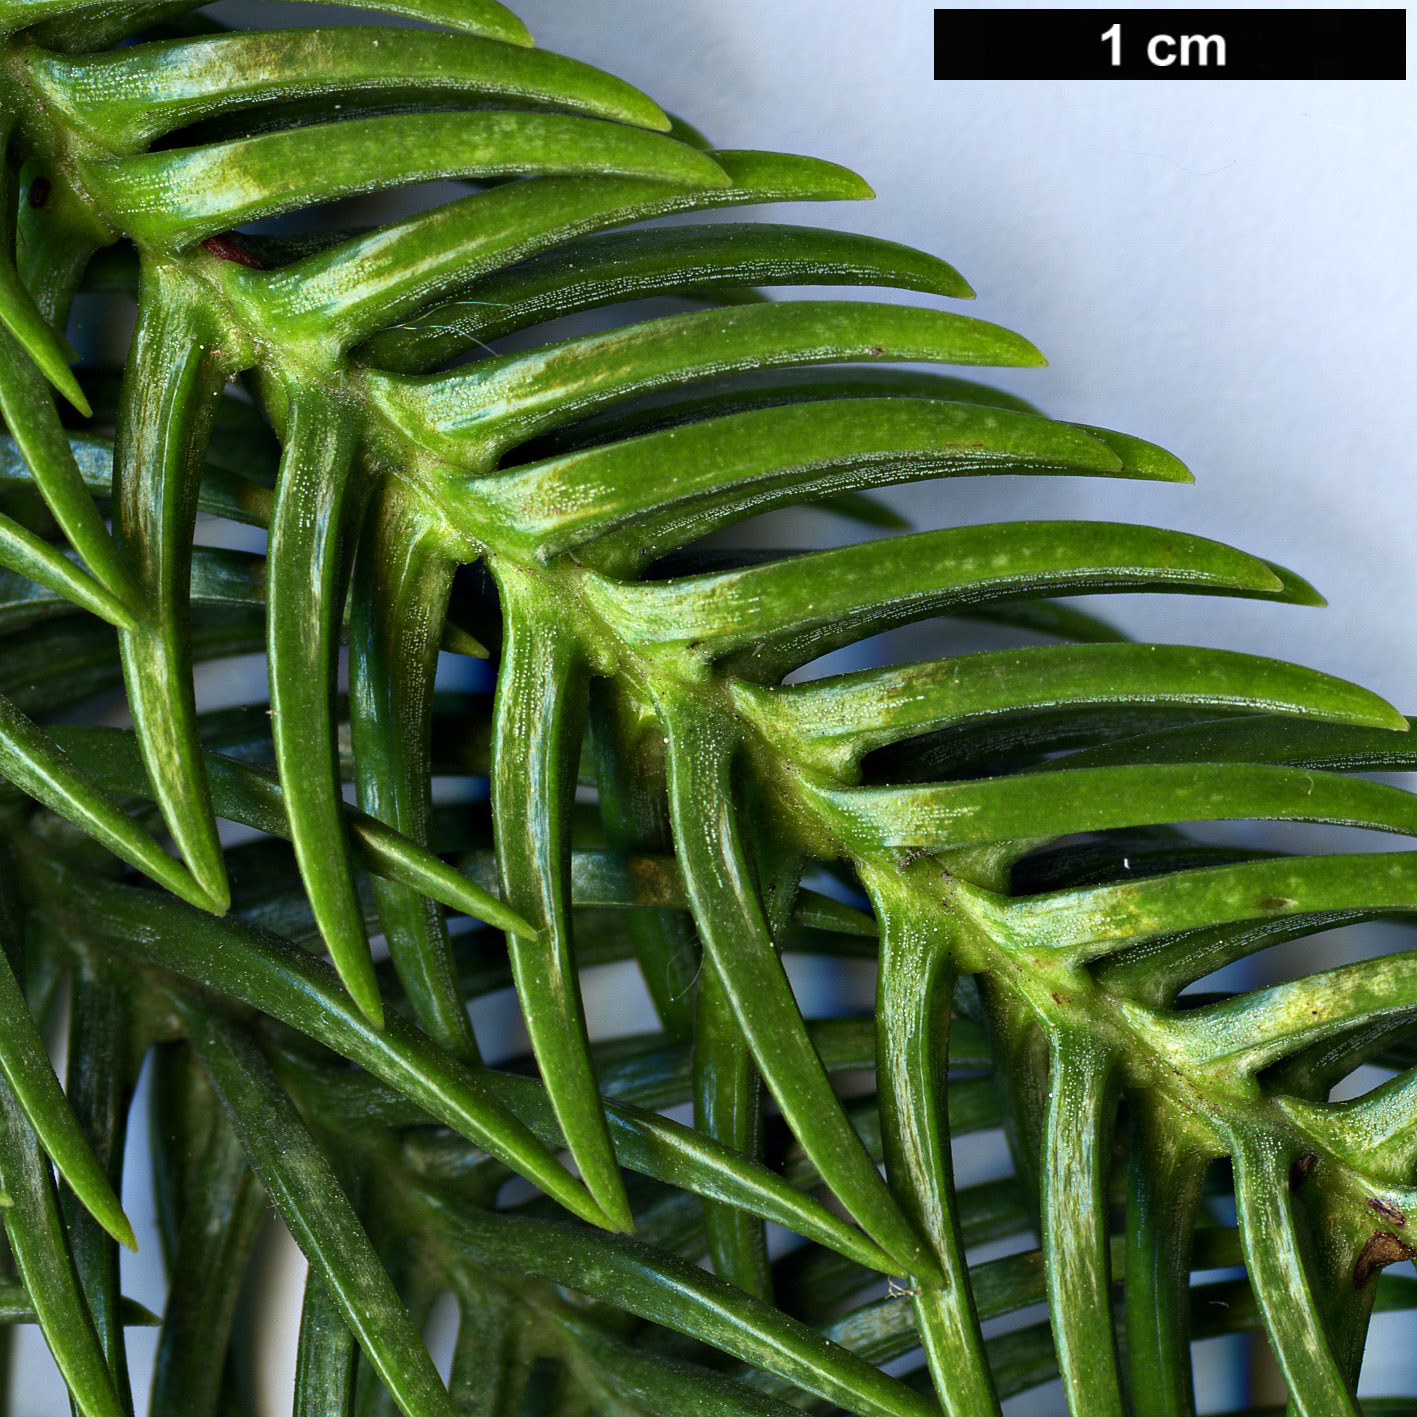 High resolution image: Family: Araucariaceae - Genus: Araucaria - Taxon: schmidii